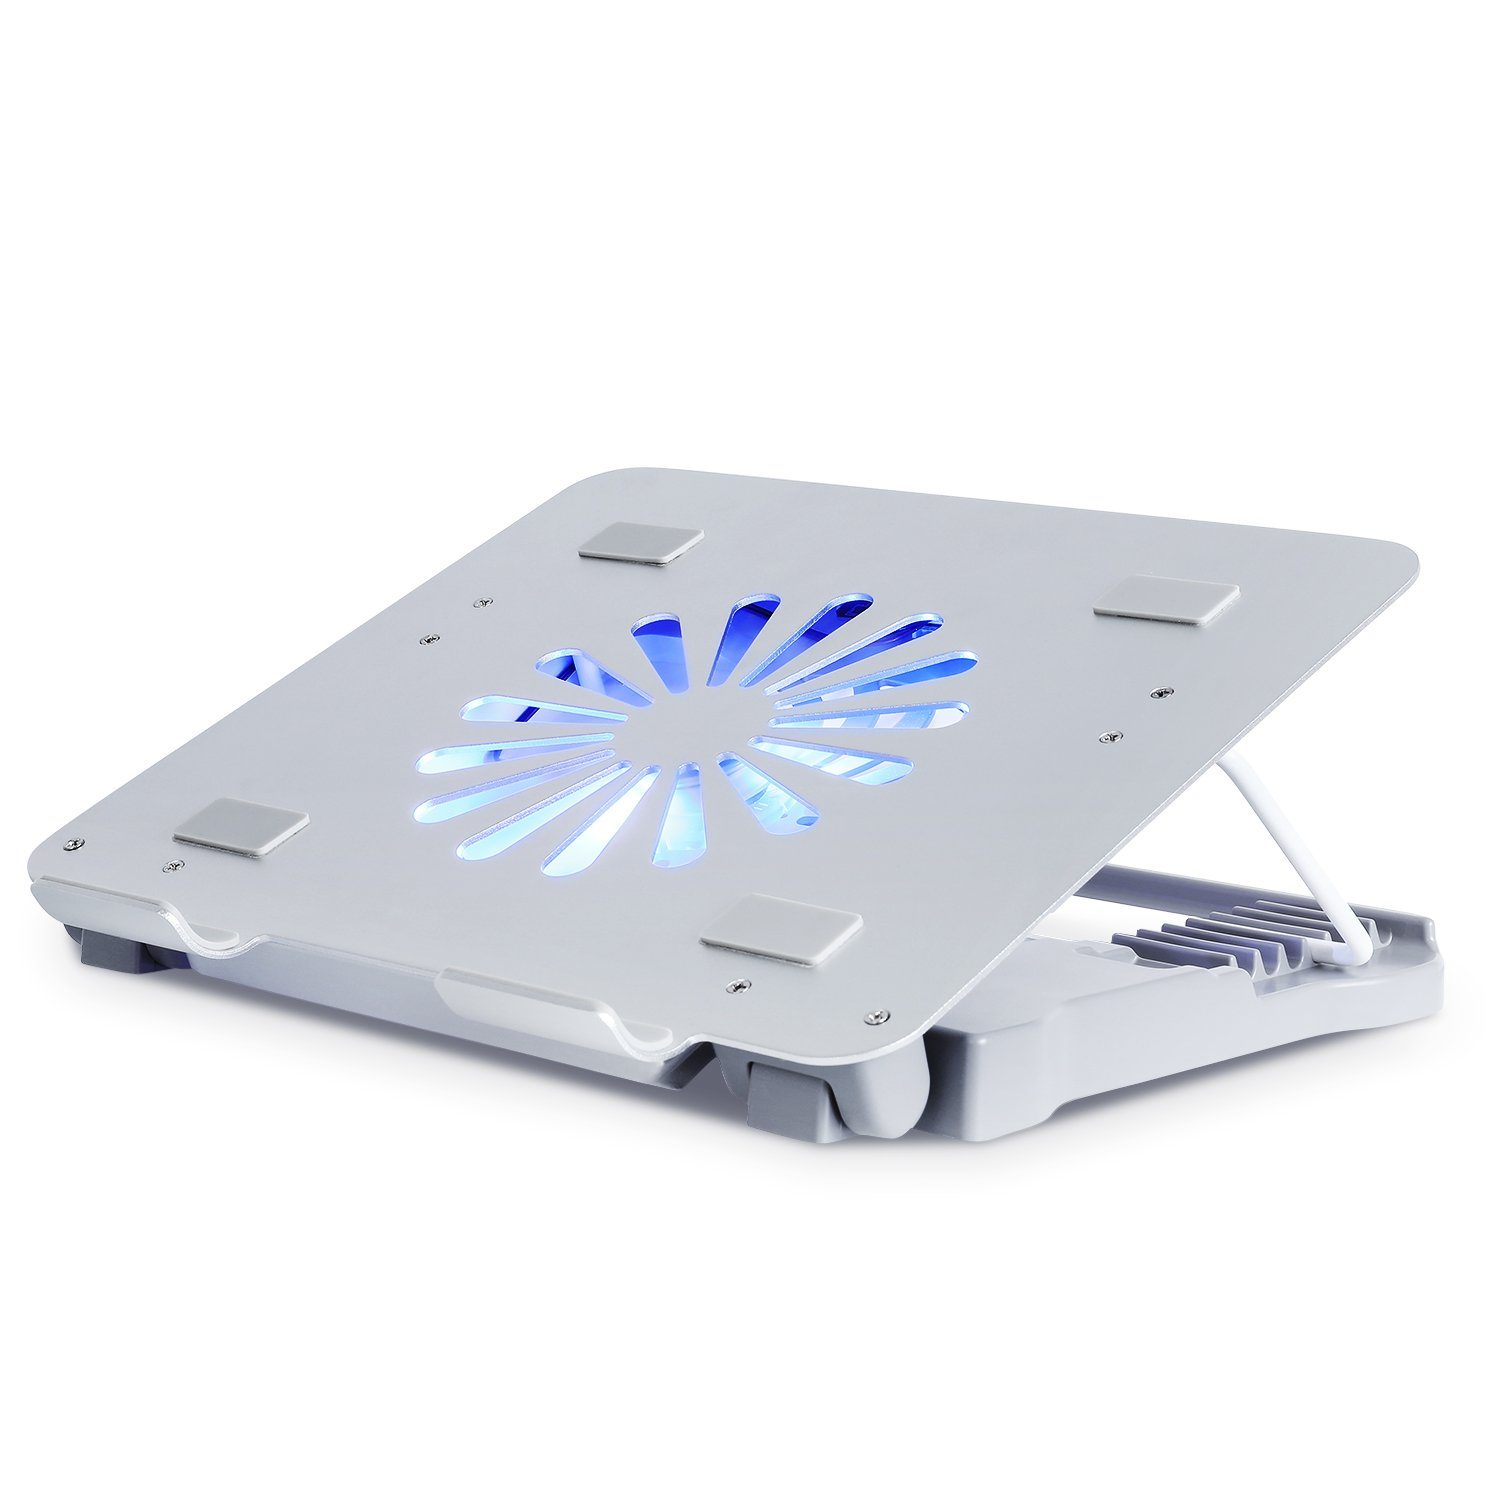 MVPower Notebook-Kühler, Notebook-Kühler Cooling Pad Laptop Unterlage  verstellbare Ständer mit Lüfter Aluminium Laptop Cooler für Gaming Office  Laptop, 17 Zoll, blaues LED-Licht, Zwei USB-Anschlüsse, Silber online  kaufen | OTTO